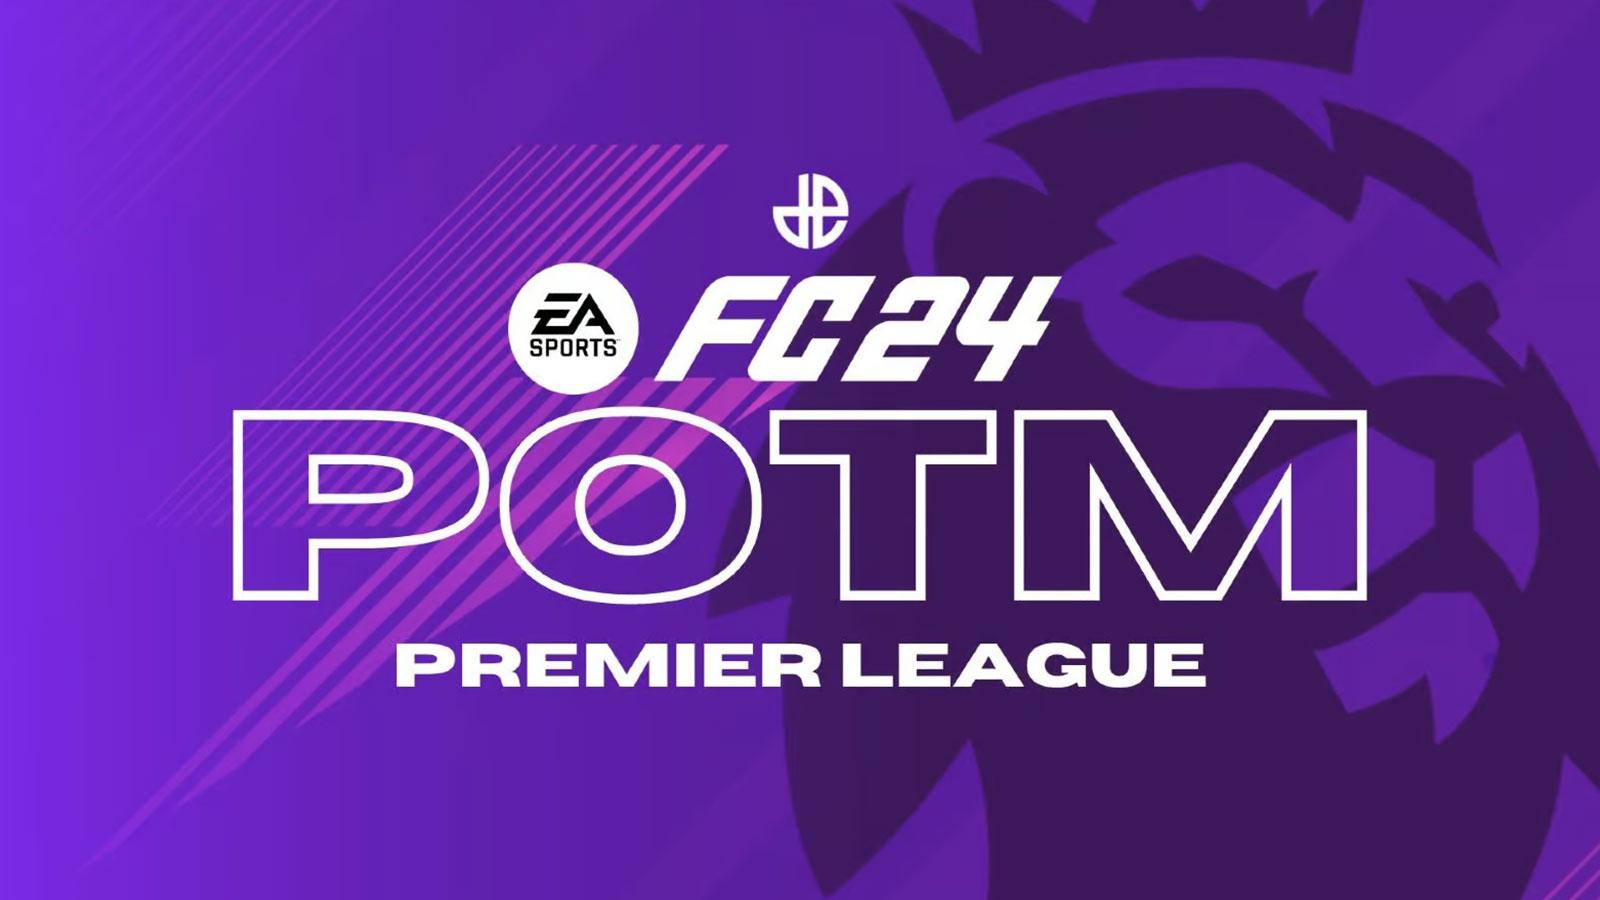 POTM Premier League EA FC 24